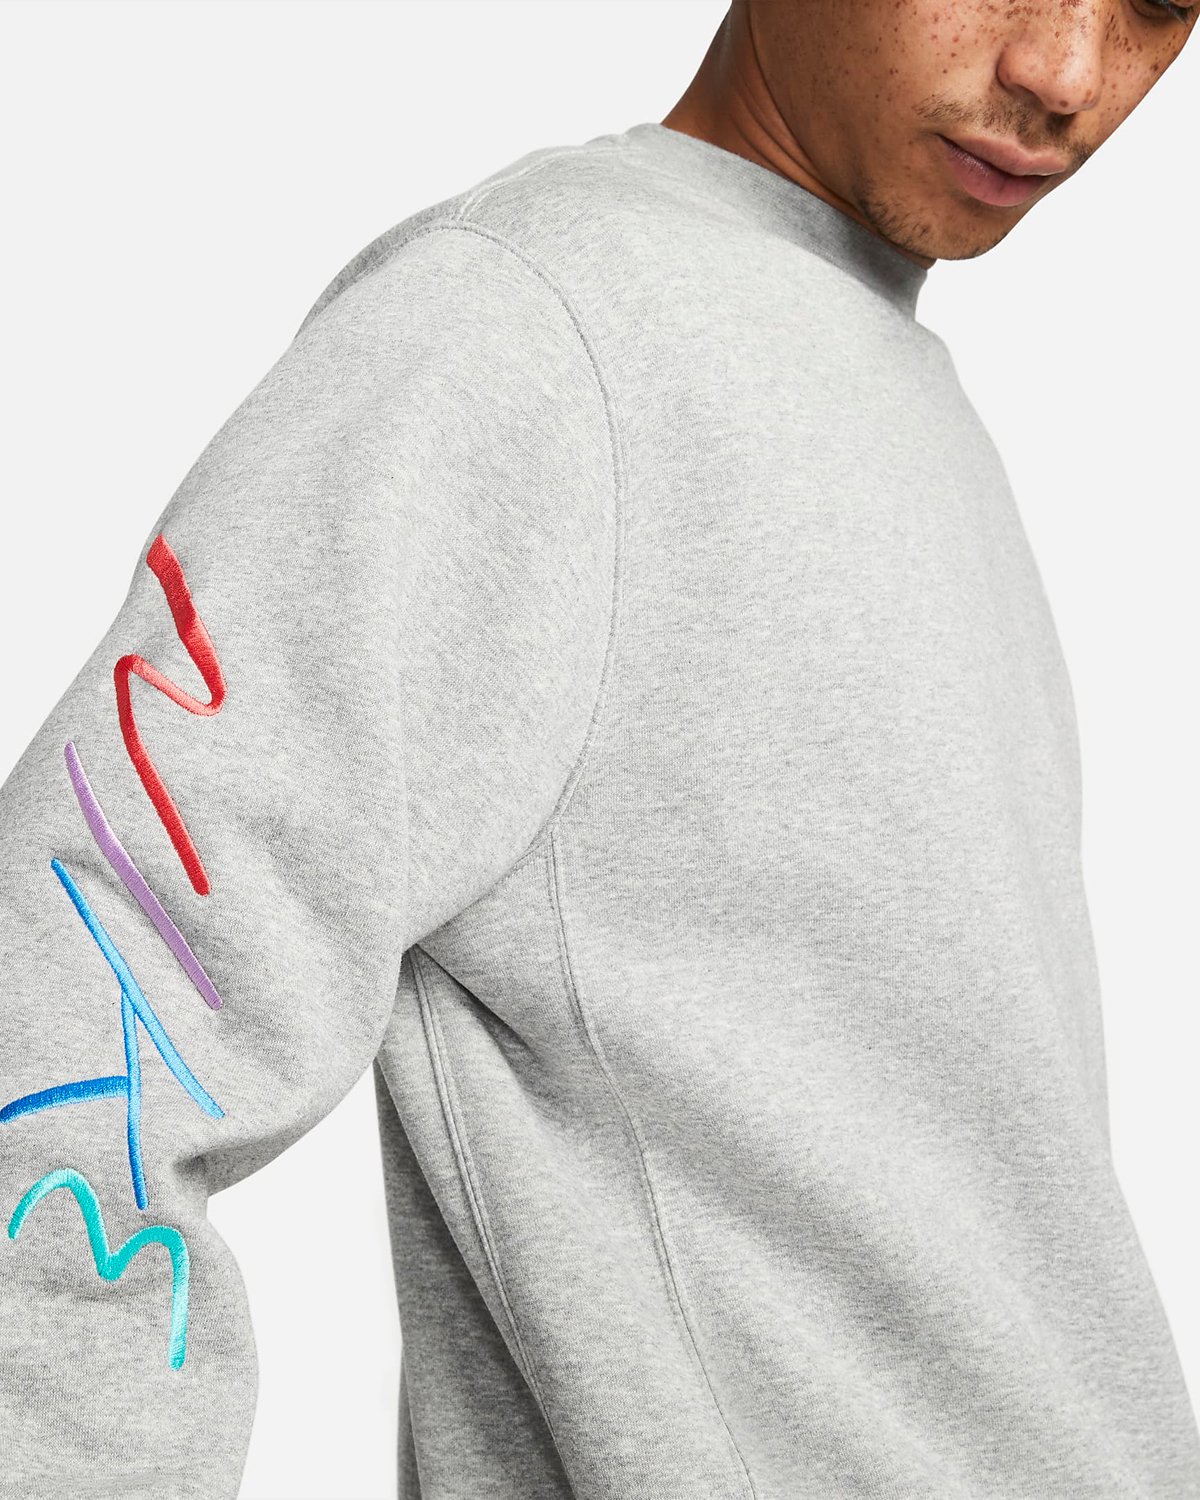 Nike-Club-Fleece-Graphic-Crew-Sweatshirt-Light-Smoke-Grey-2